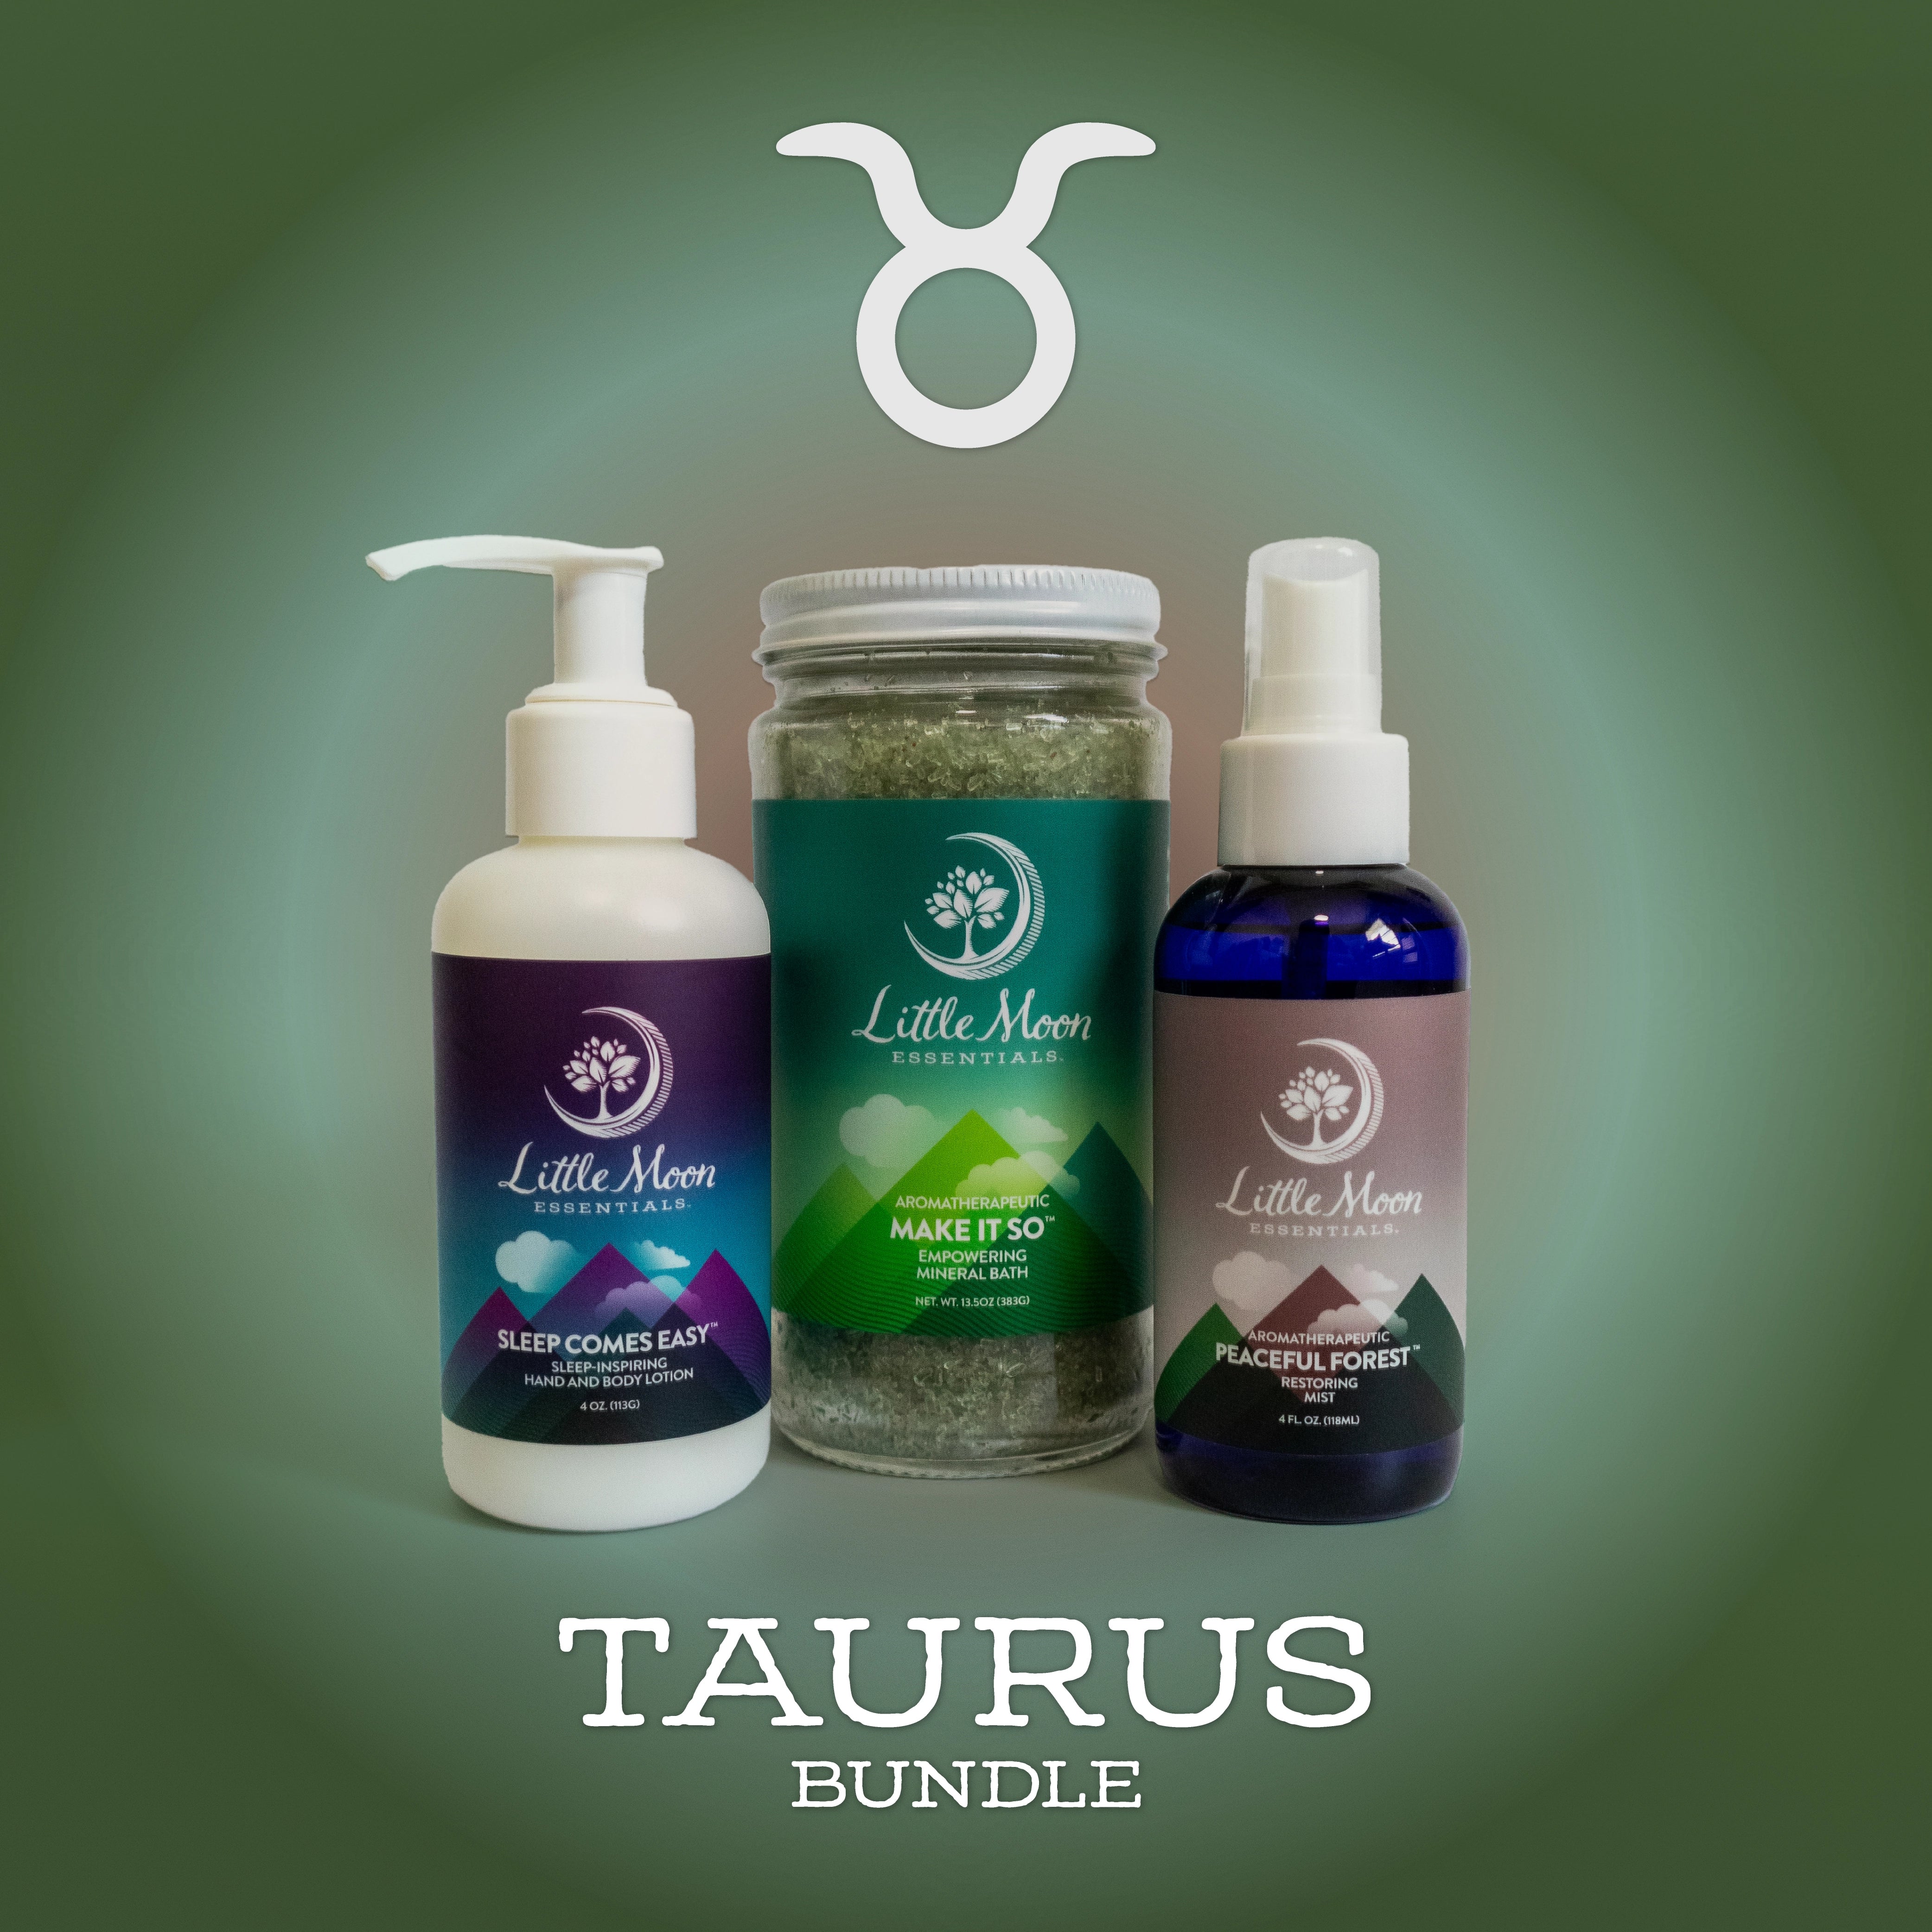 Taurus Bundle - Little Moon Essentials